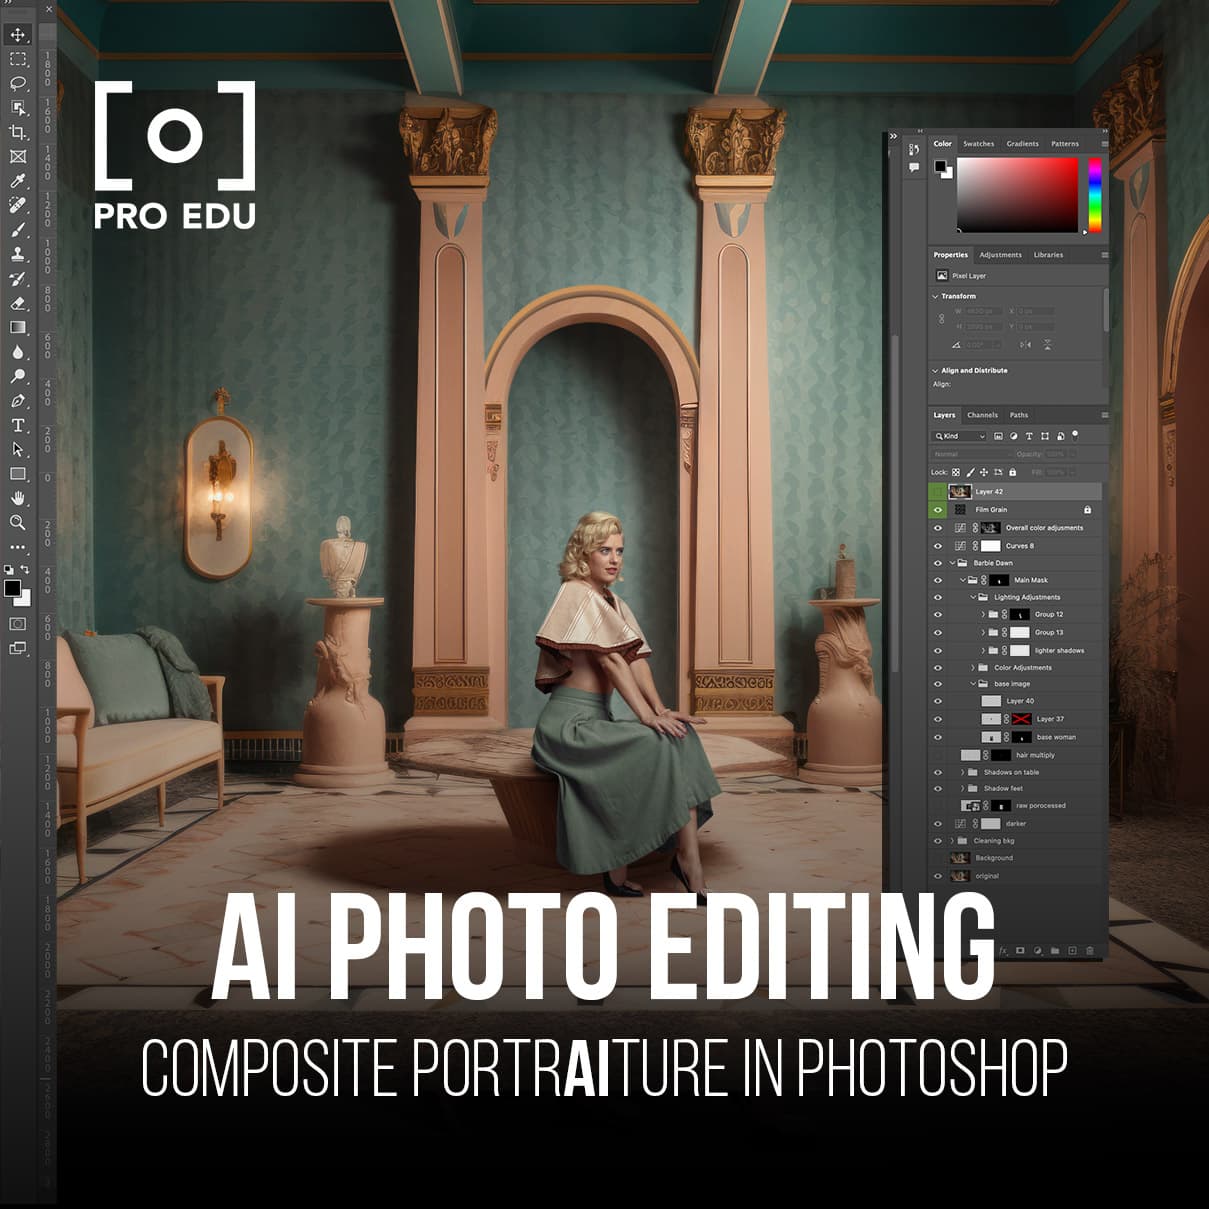 AI Photo Retouching In Photoshop | Portraiture Composite Course PRO EDU PRO EDU